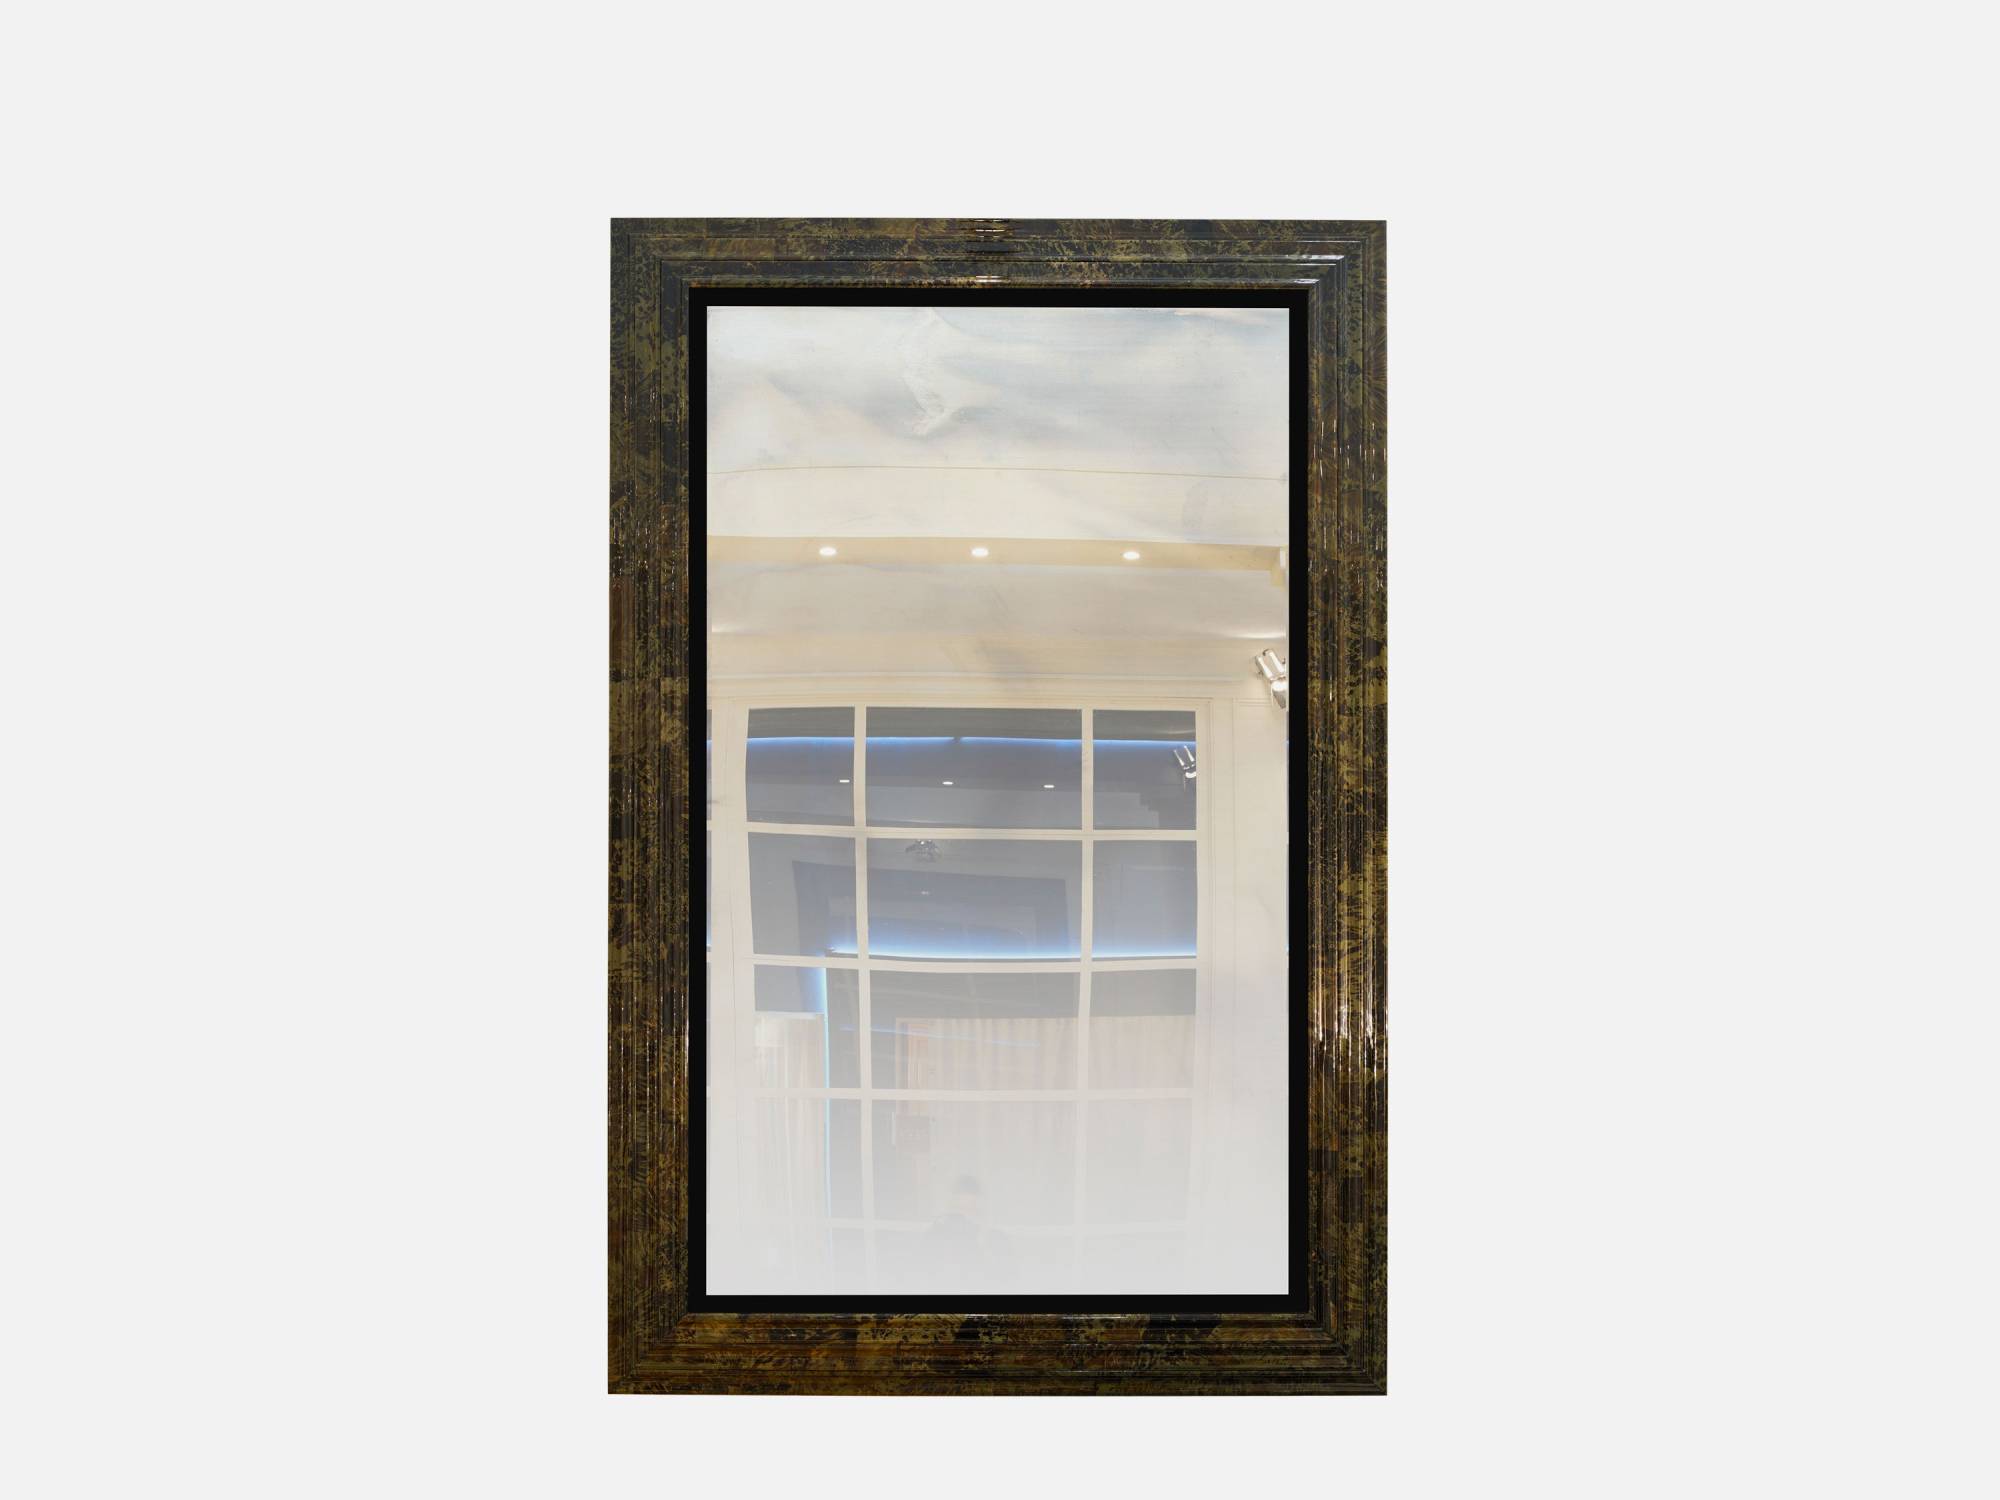 ART. 2209 – C.G. Capelletti Italian Luxury Classic Mirrorboards. Made in Italy classic interior design